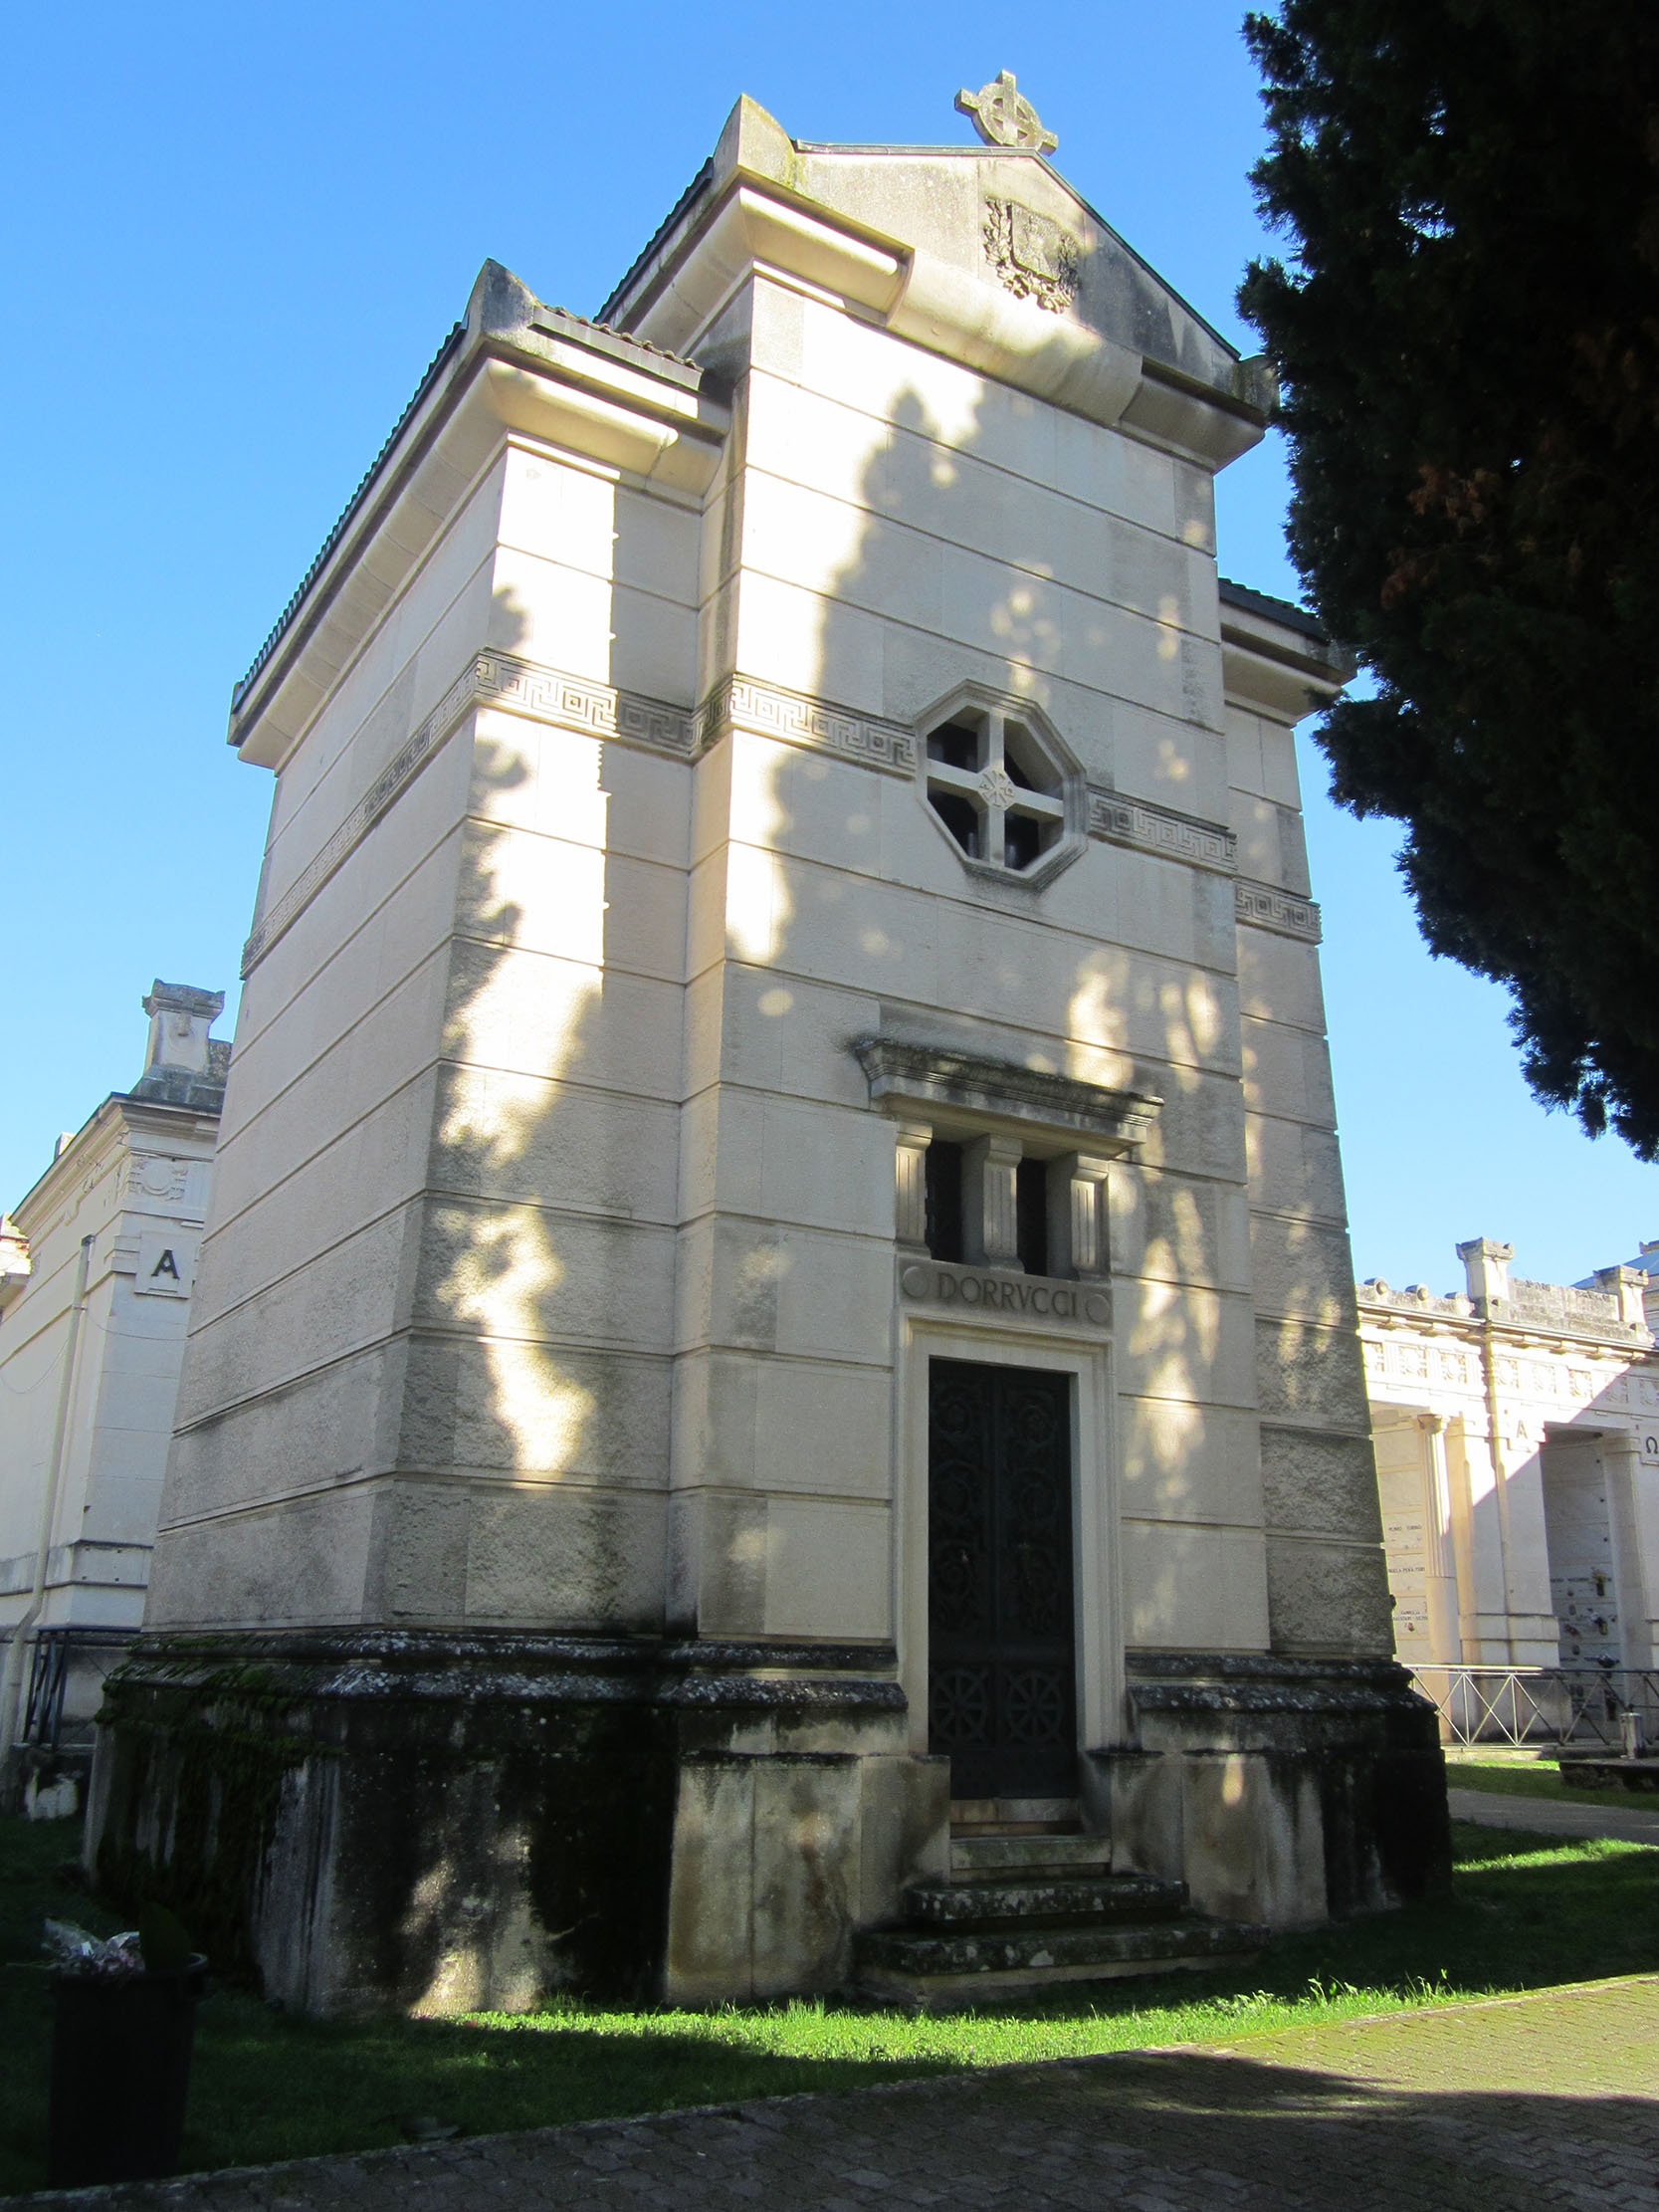 Cappella cimiteriale Dorrucci (cimitero, monumentale) - Sulmona (AQ) 